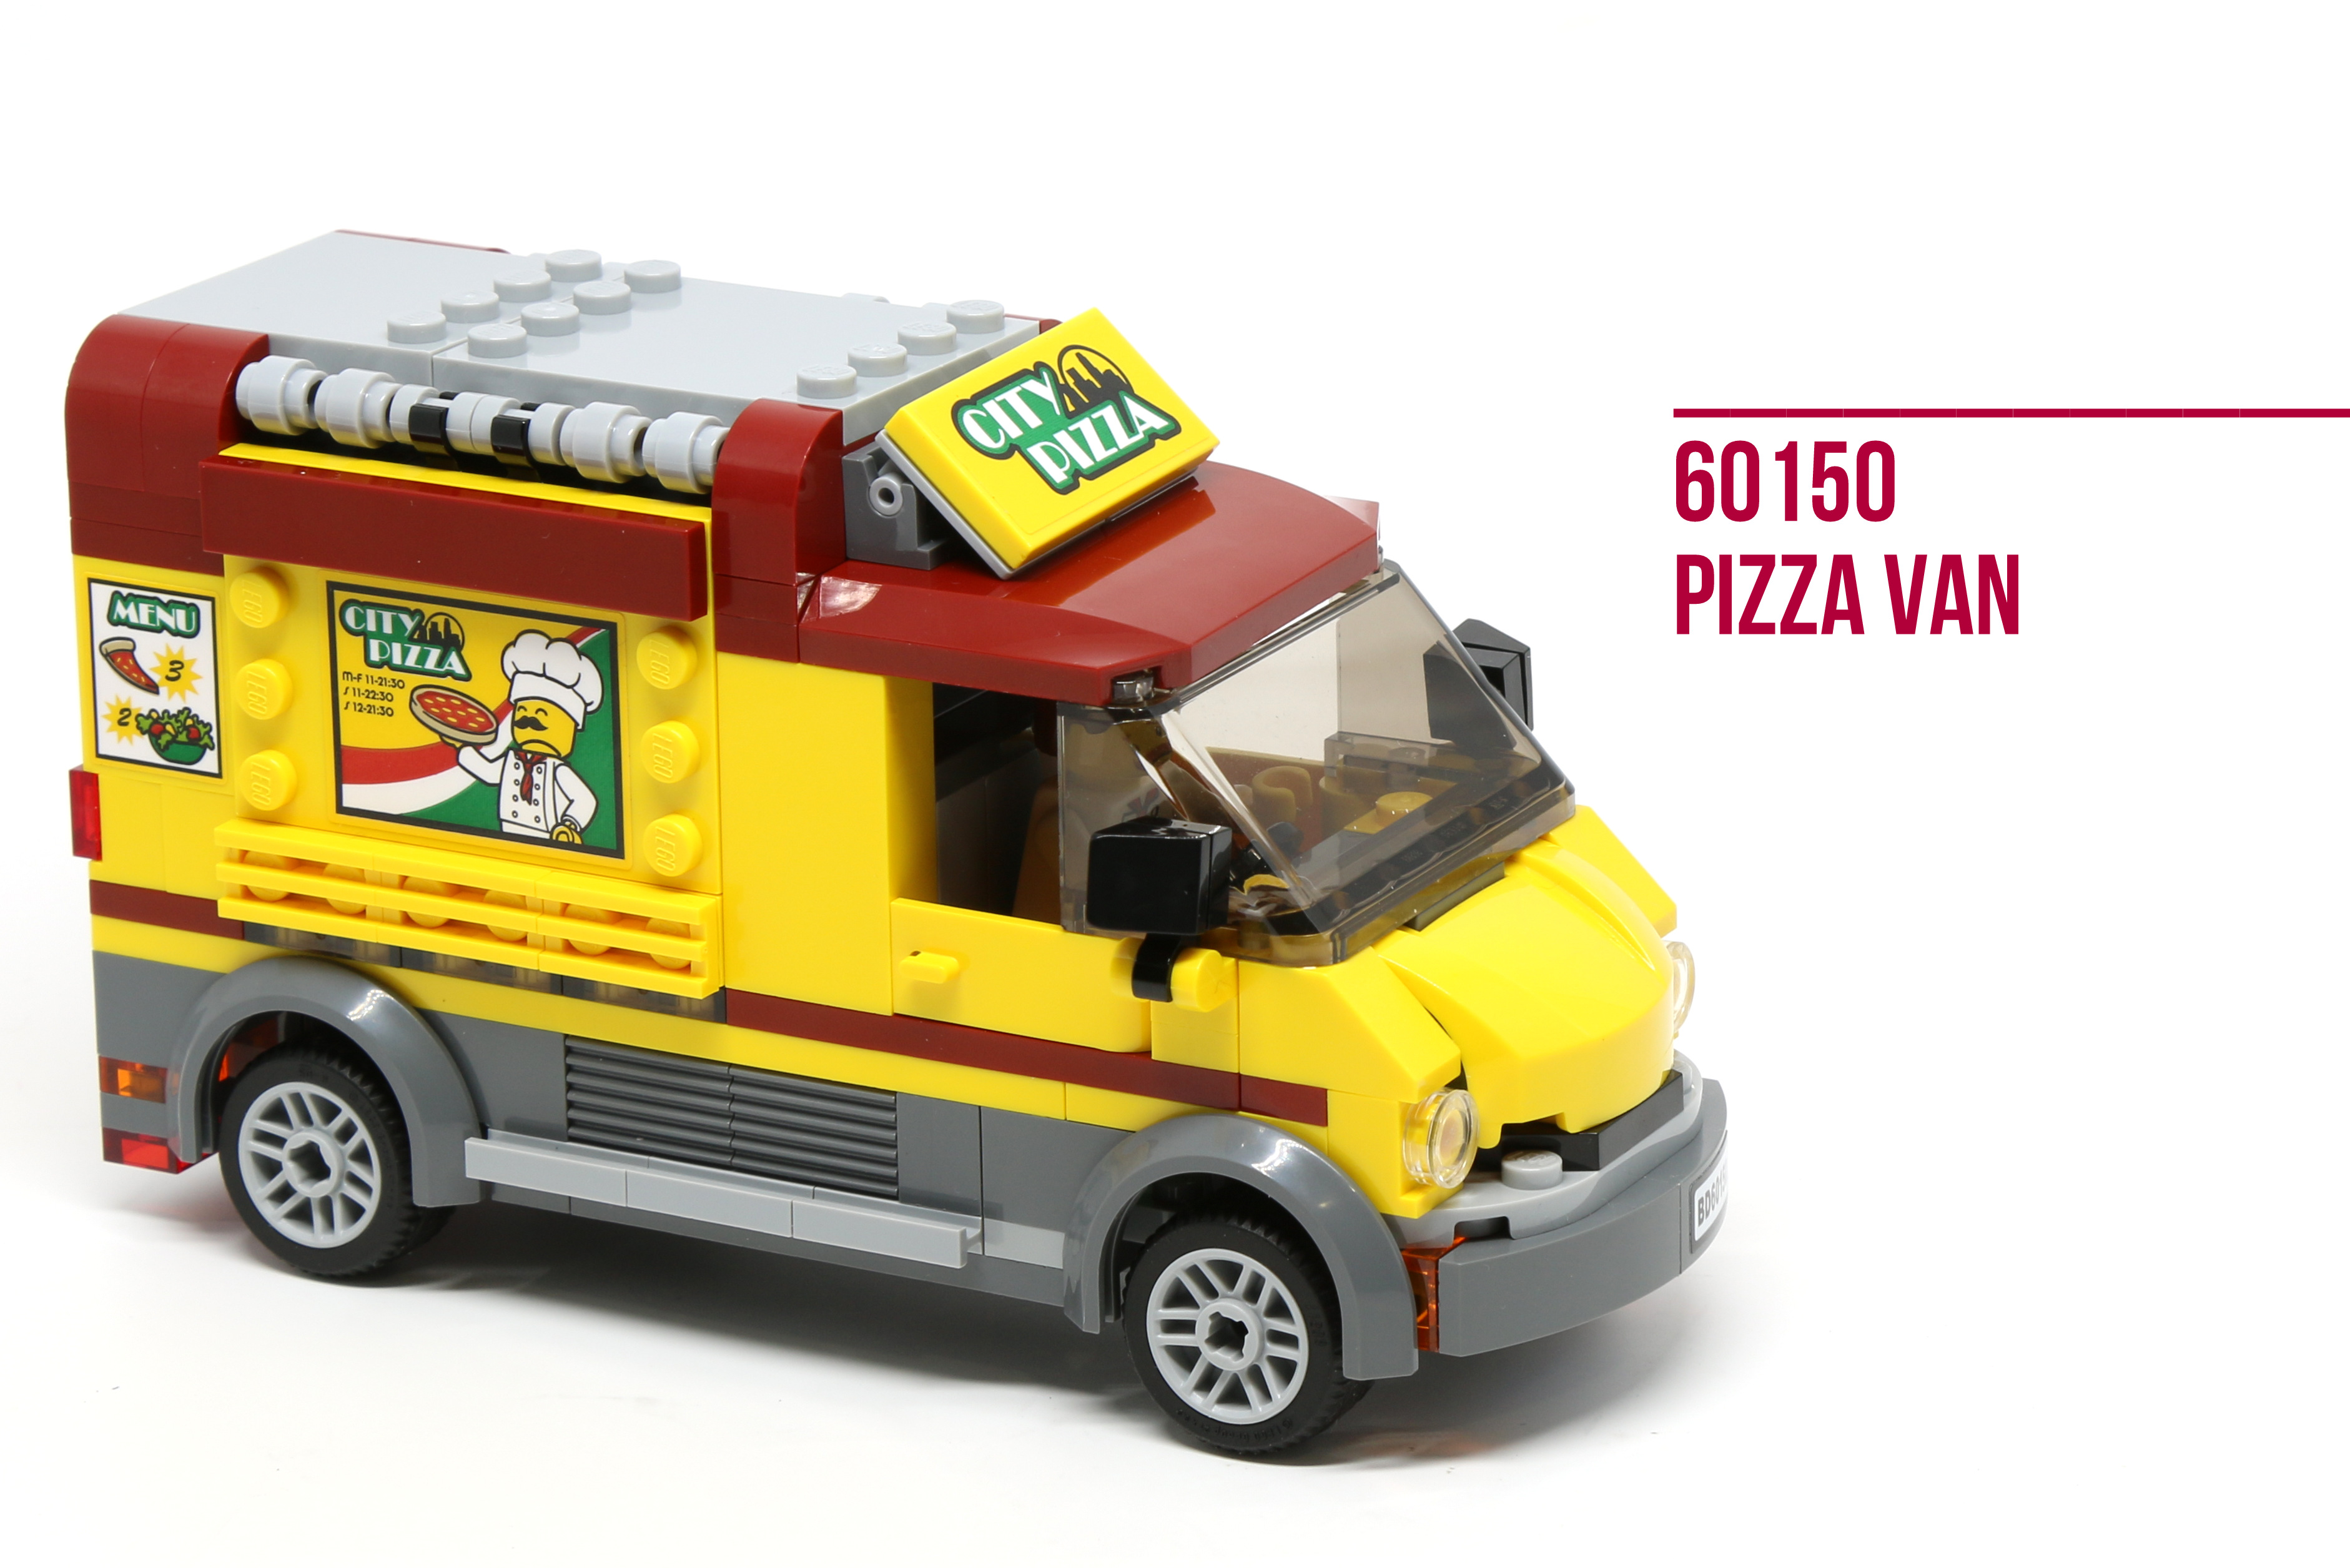 Udråbstegn Fader fage bruge Review: LEGO 60150 Pizza Van - Jay's Brick Blog